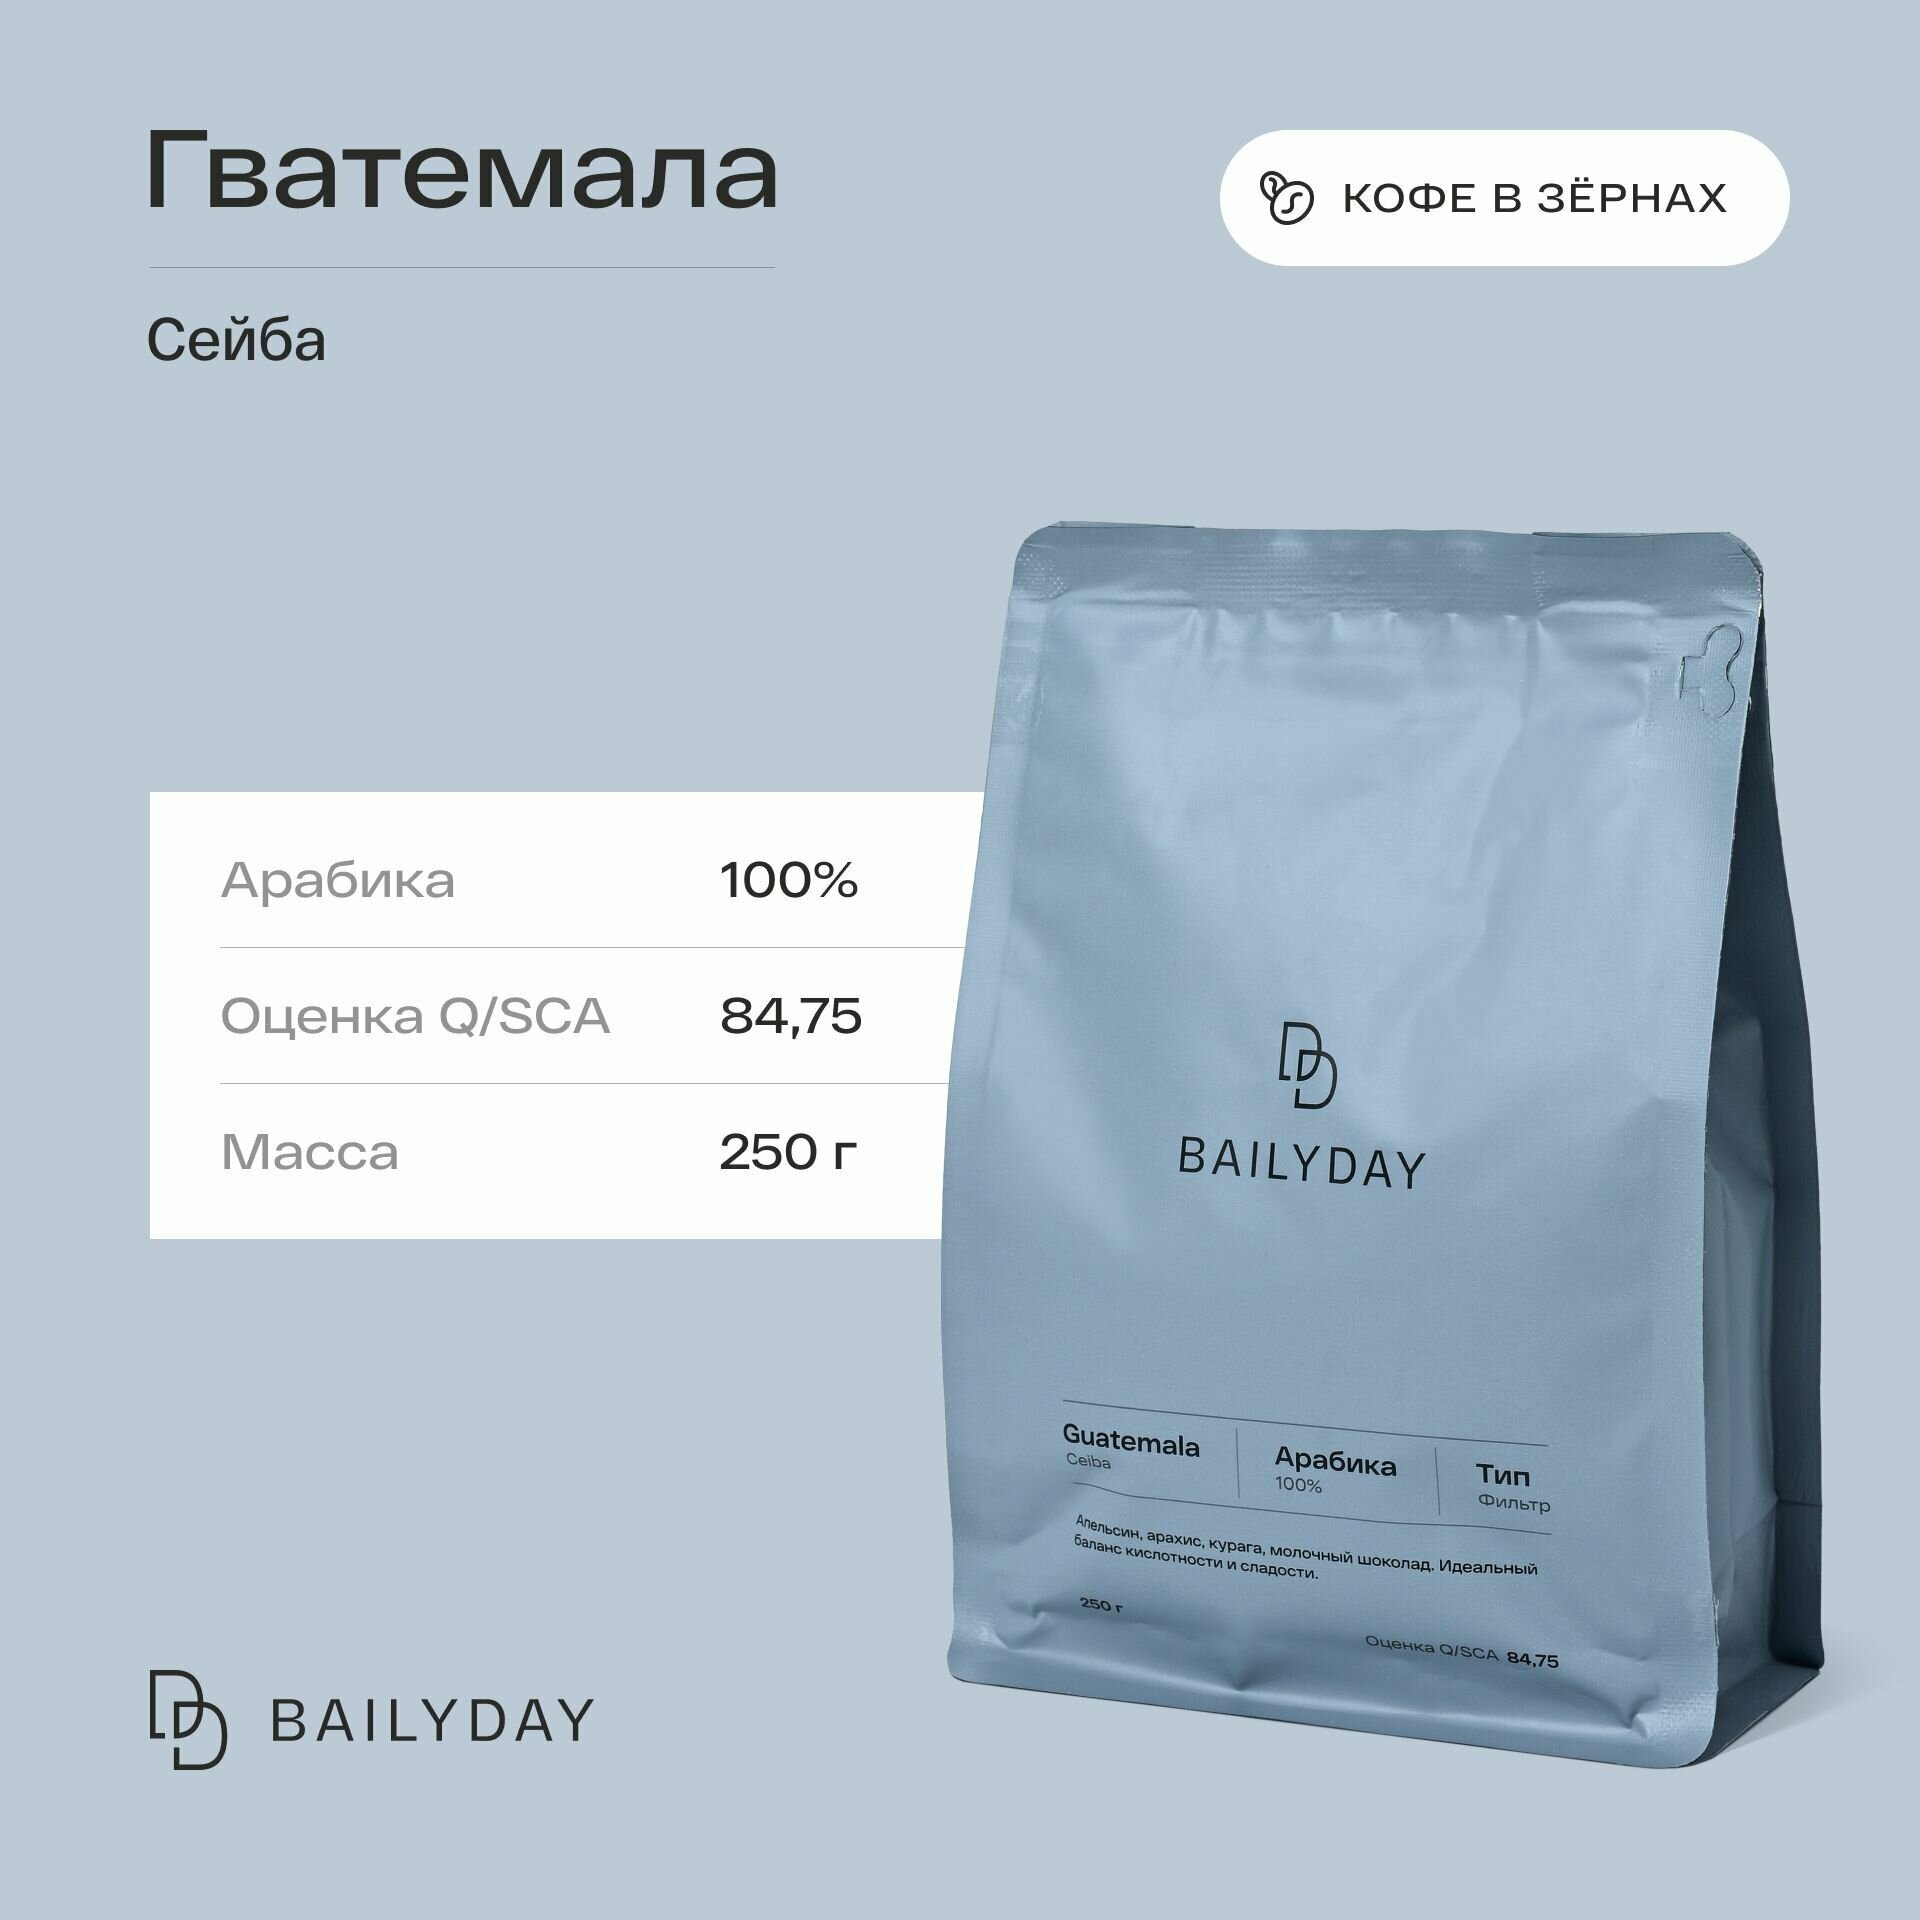 Кофе в зернах Гватемала Сейба Bailyday 100% арабика, обжарка под фильтр, 250 г